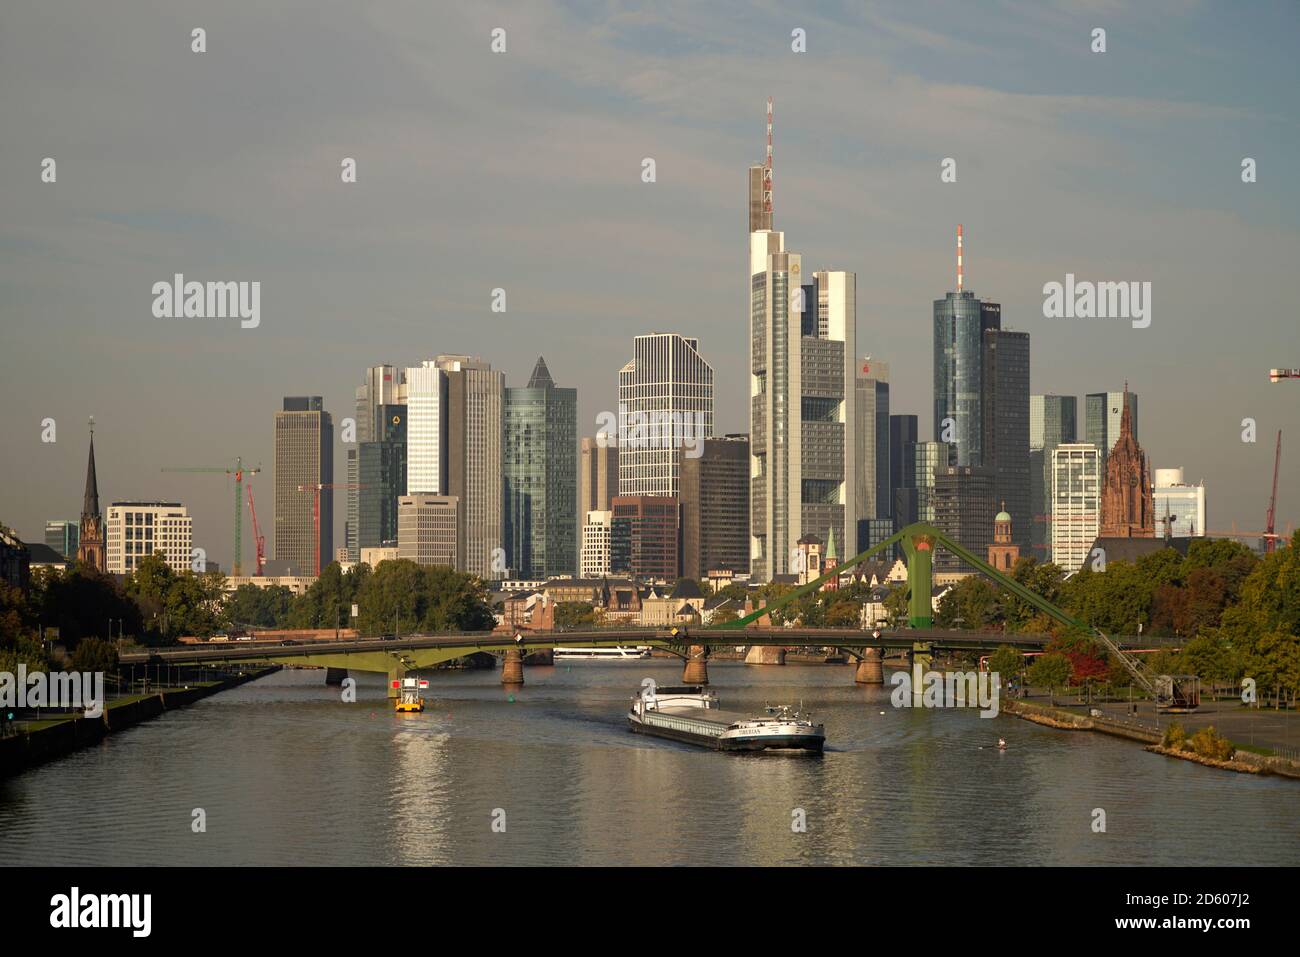 Germania, Francoforte, il quartiere finanziario e il fiume principale Foto Stock